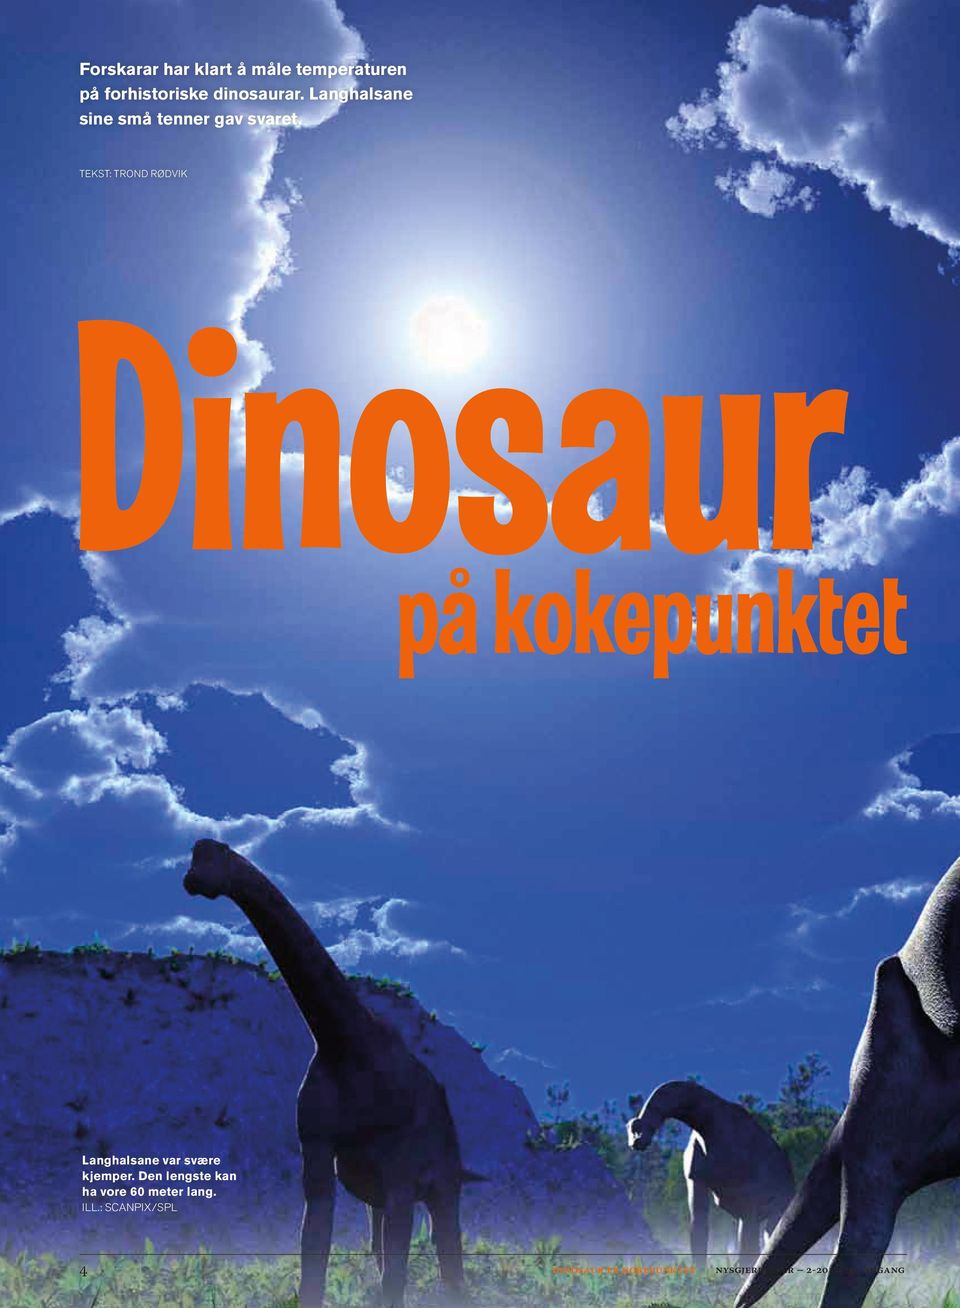 TEKST: TROND RØDVIK Dinosaur på kokpunktt Langhalsan var svær kjmpr.